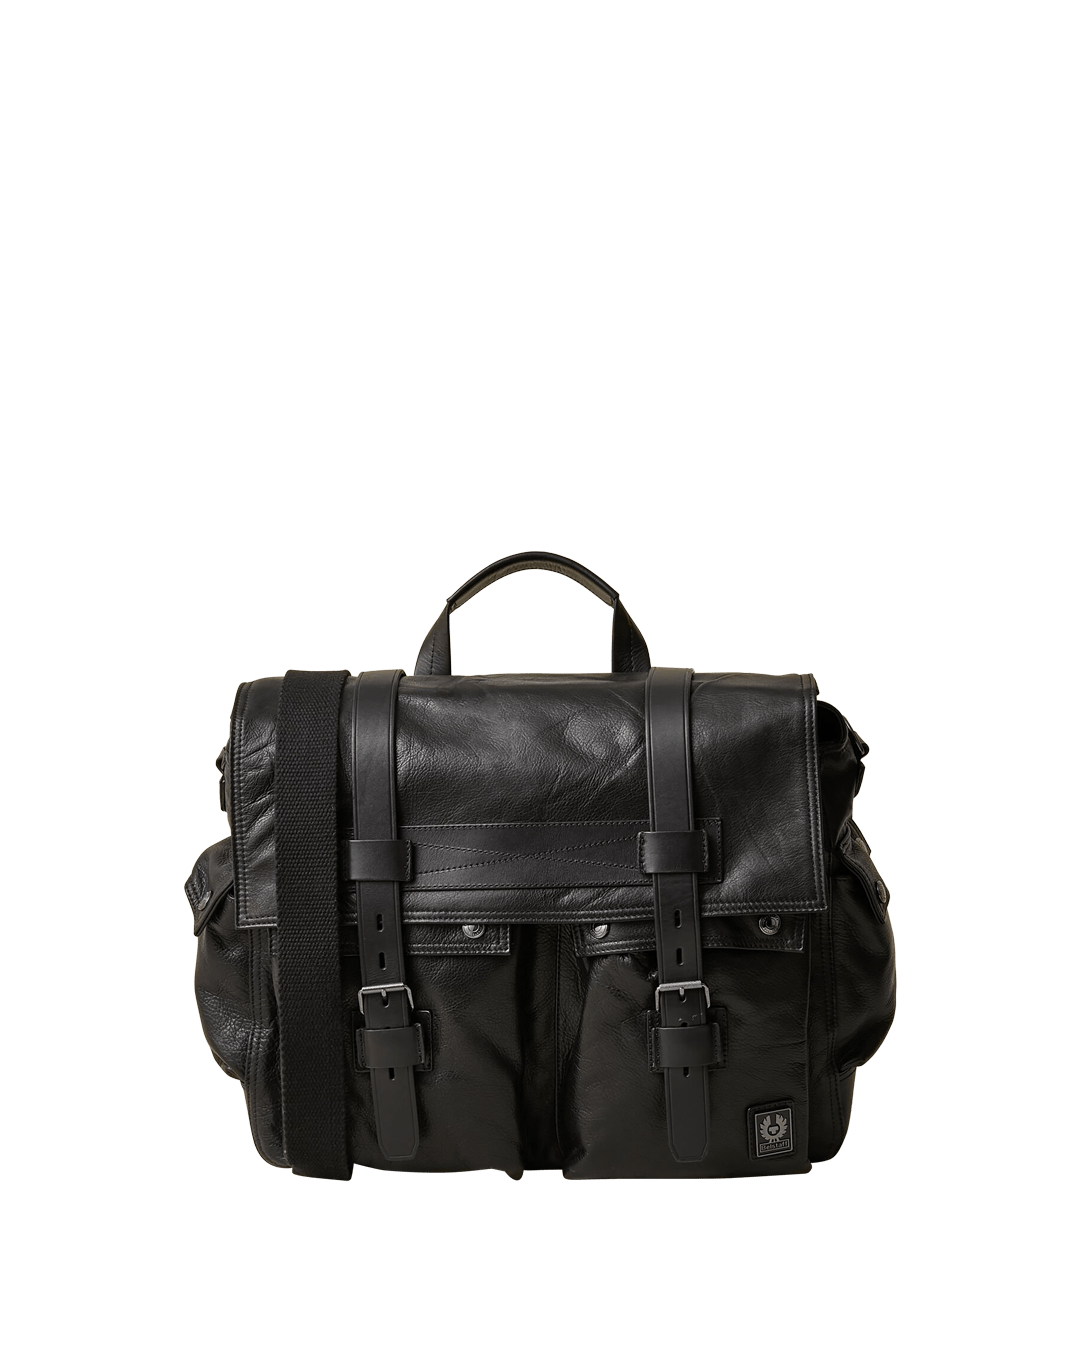 Classic Belstaff Colonial Messenger Shoulder Bag in Black | Gotlands ...